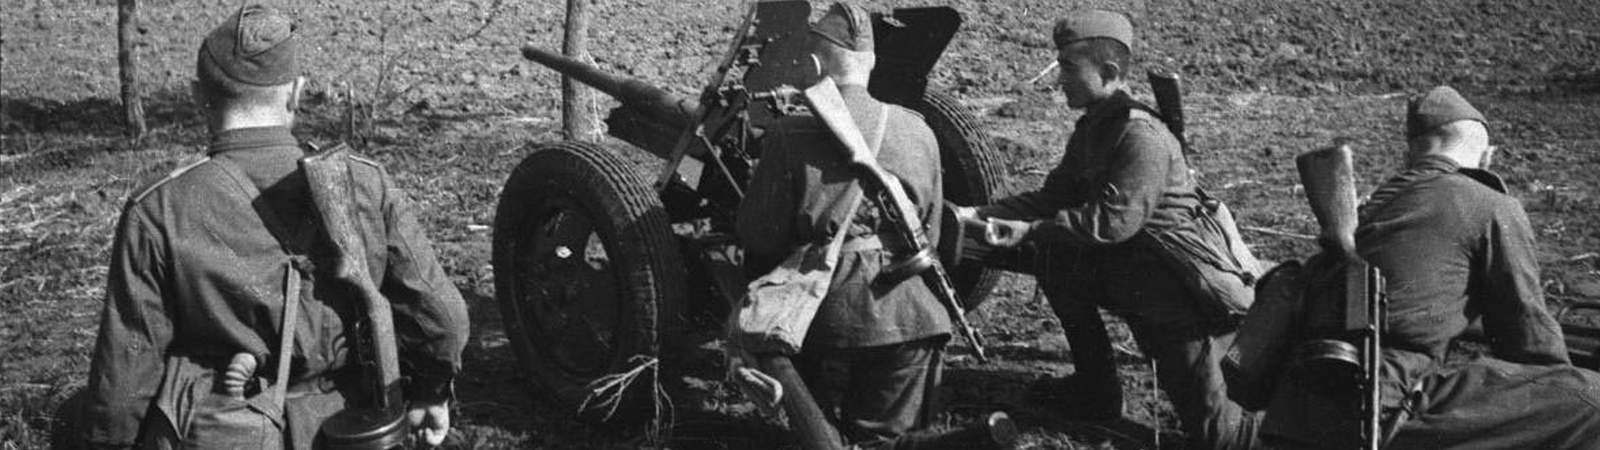 Артиллеристы Великой Отечественной войны 1941-1945